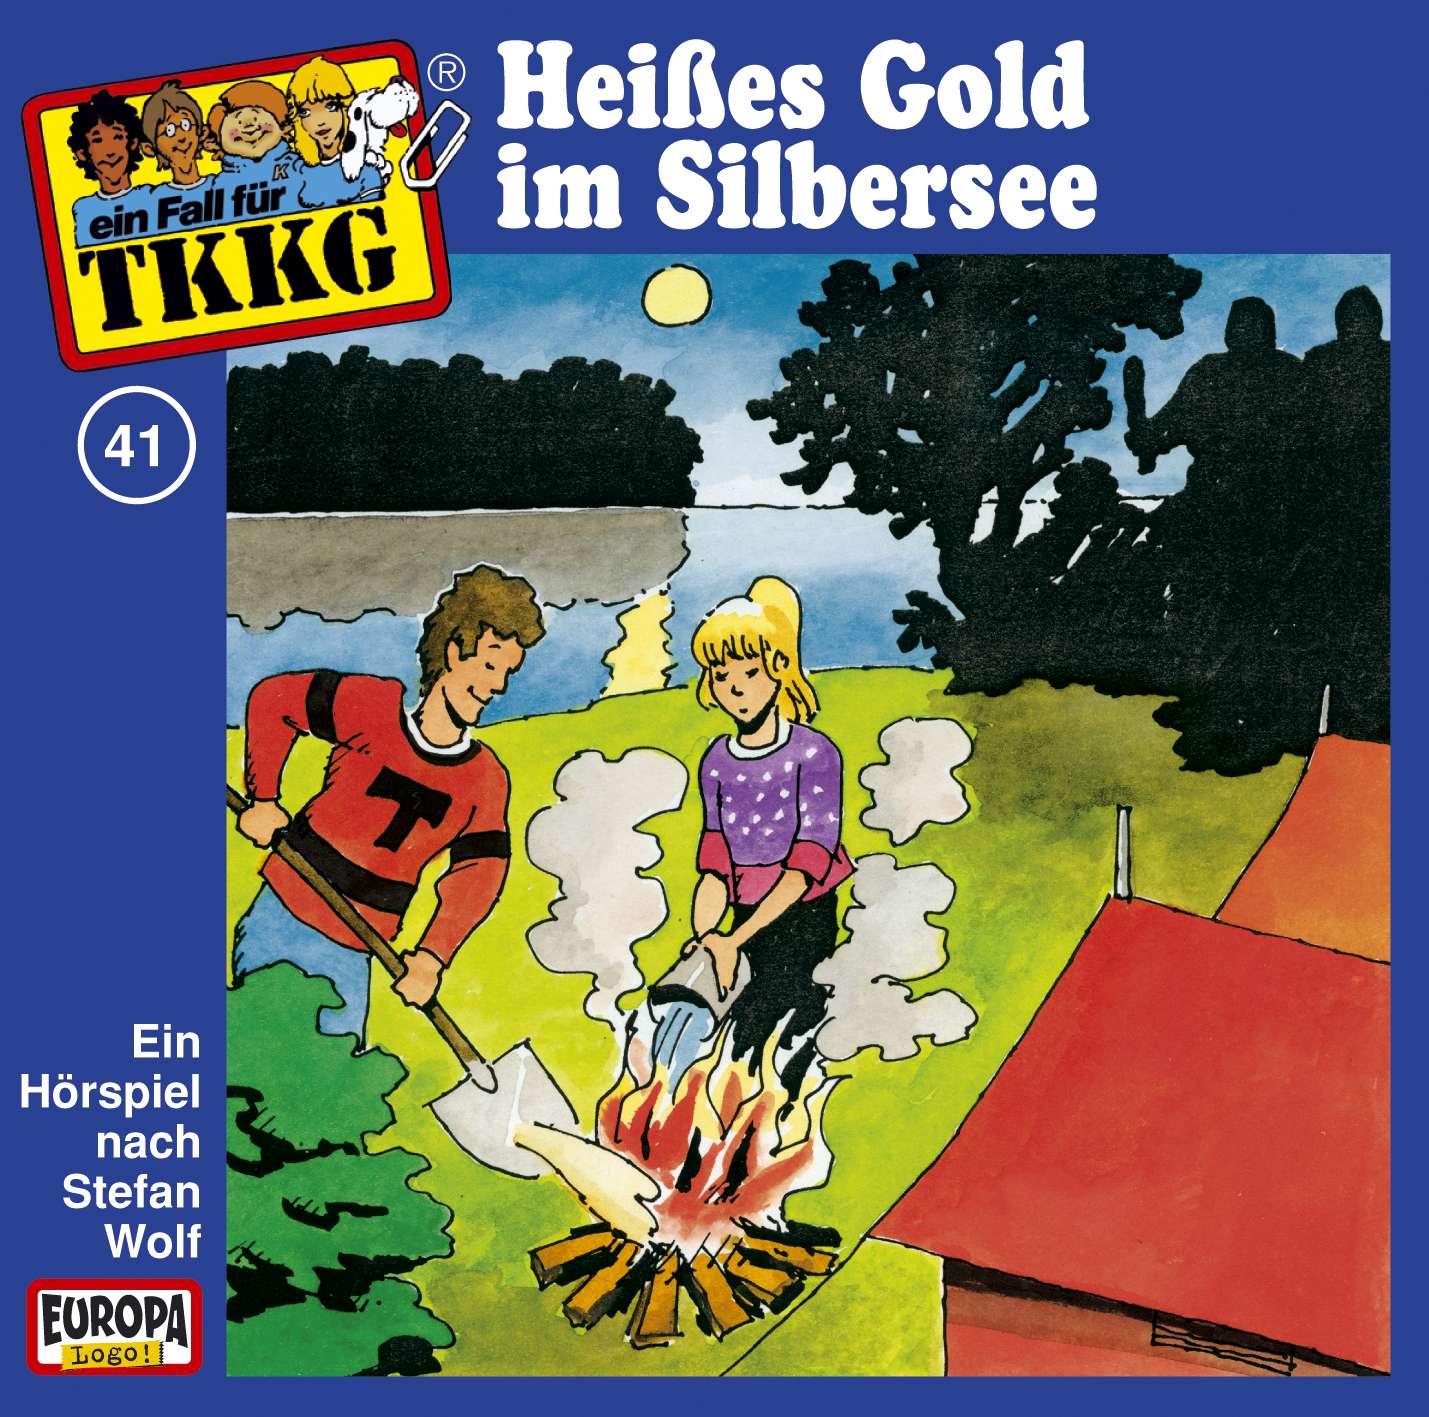 TKKG Retro-Archiv: Heißes Gold im Silbersee